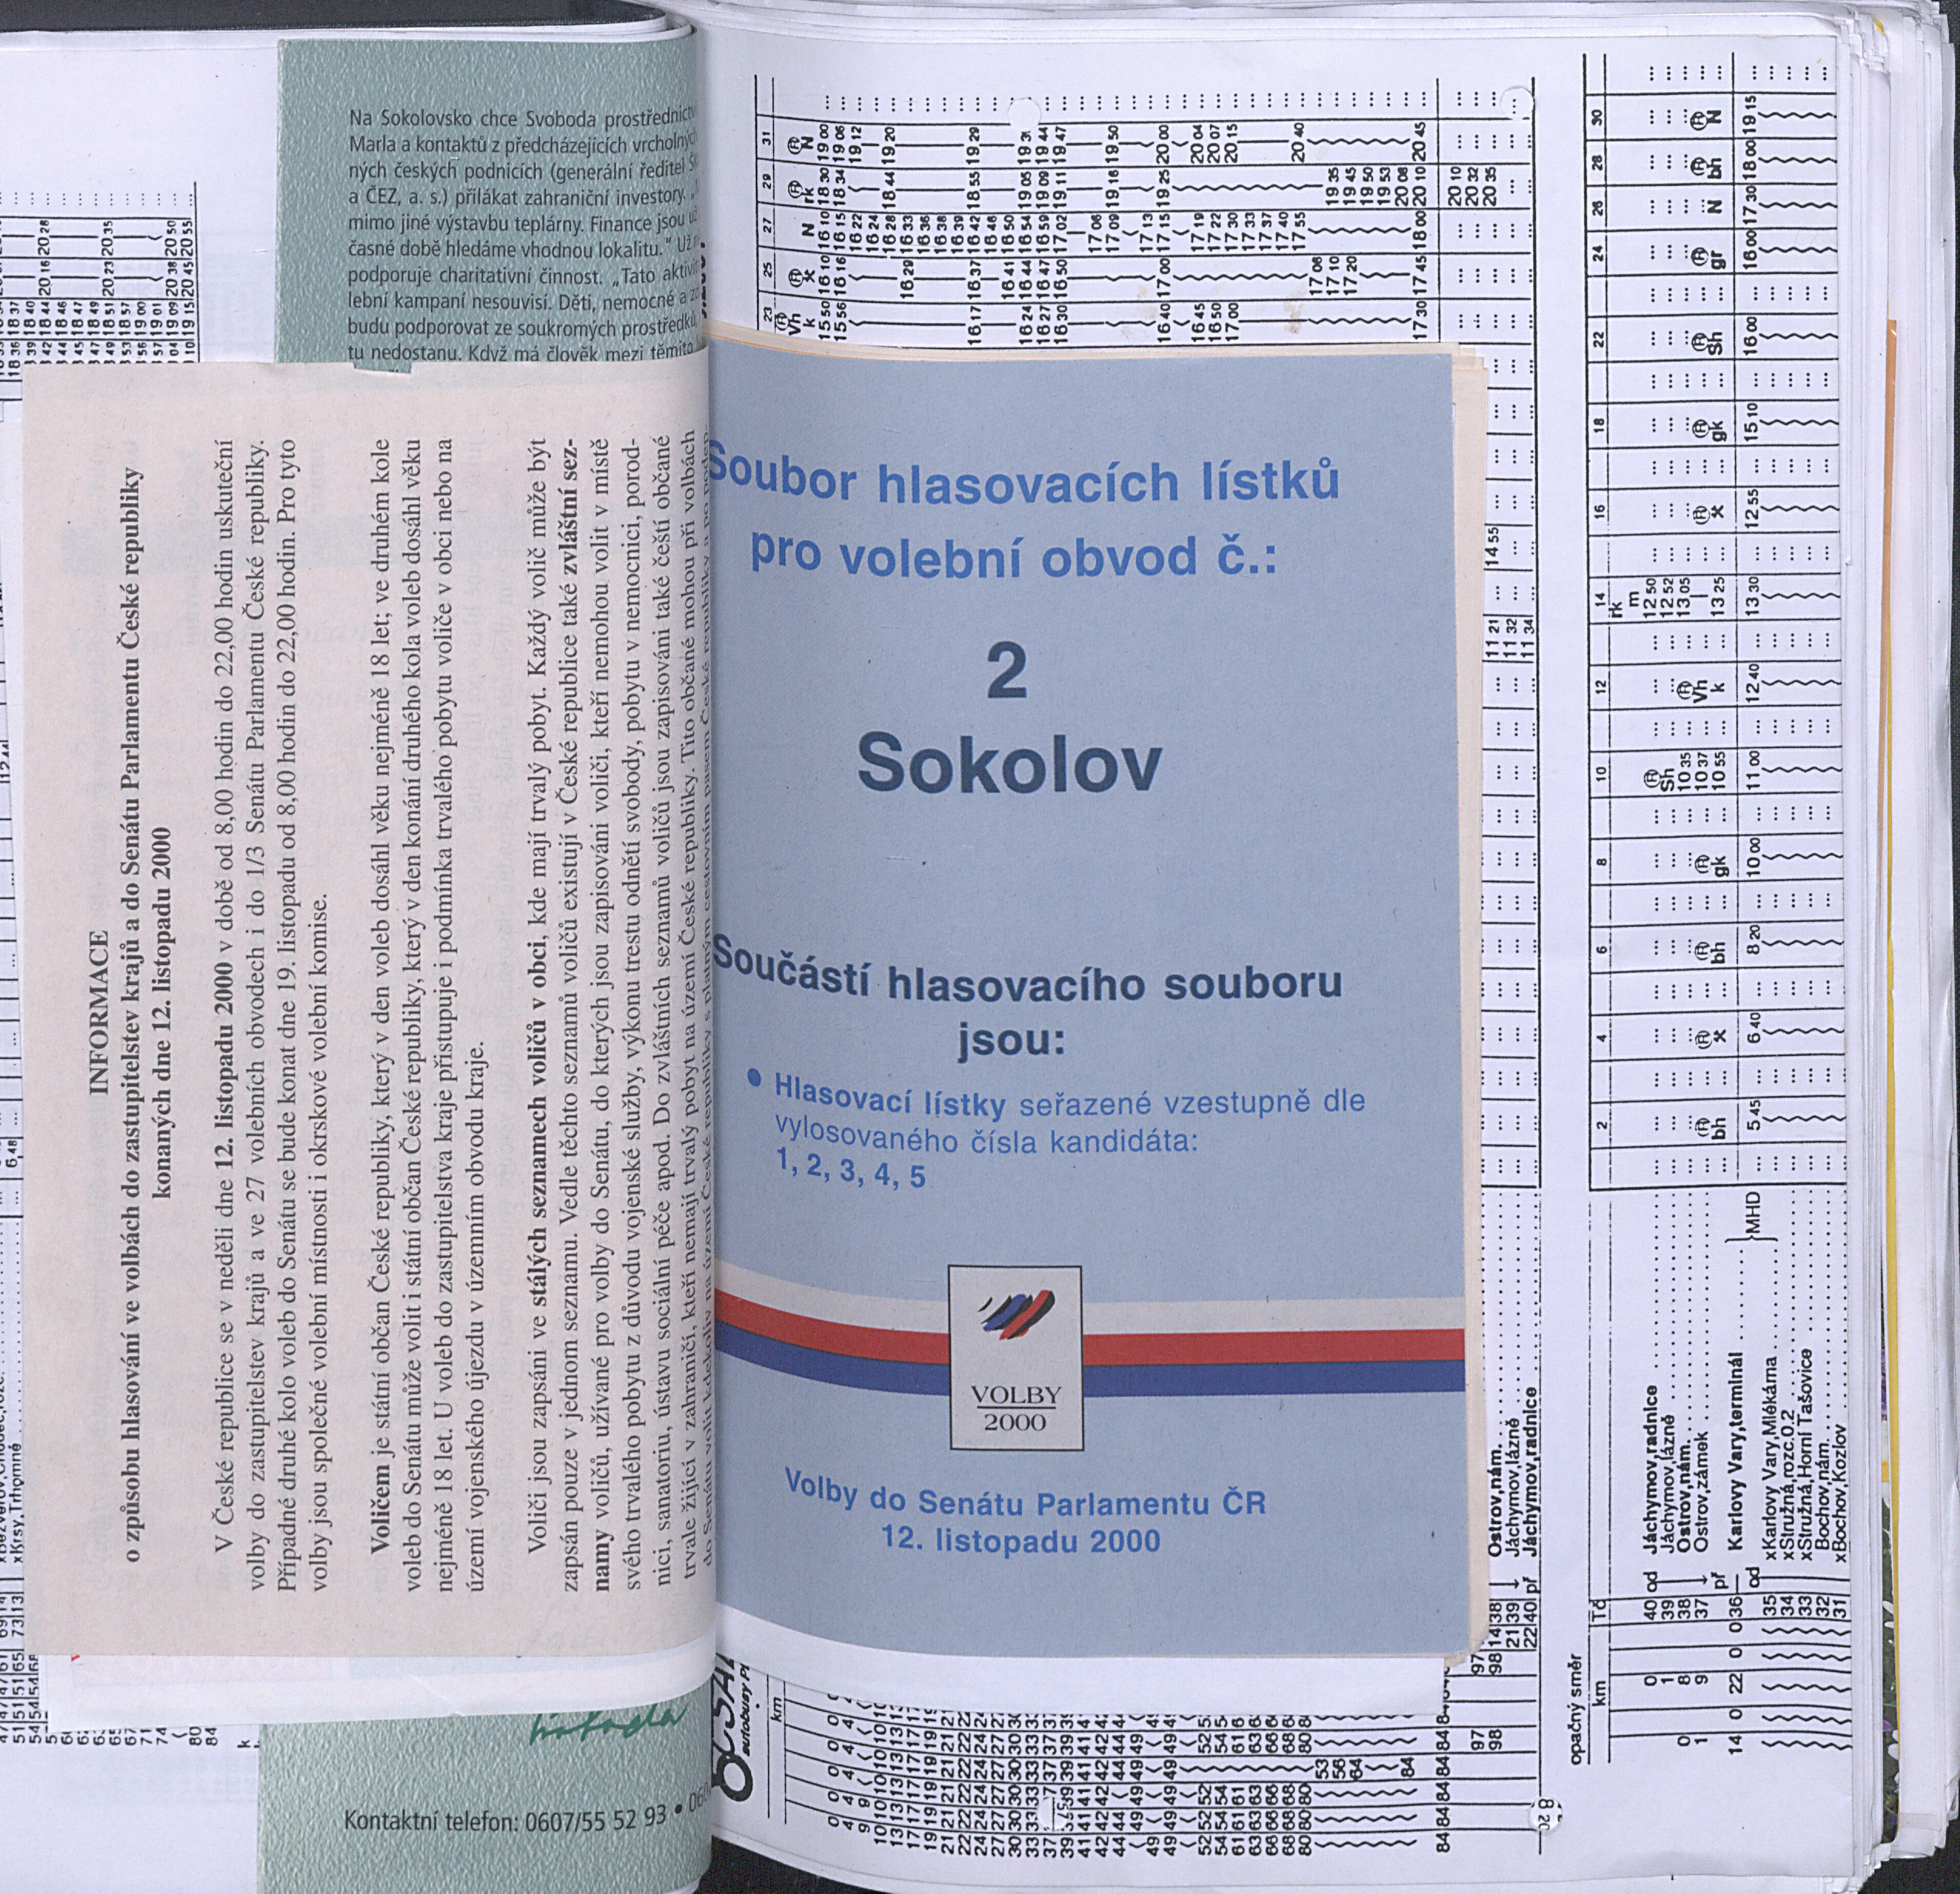 38. soap-kv_01822_mesto-touzim-priohy-1997-2000_0390